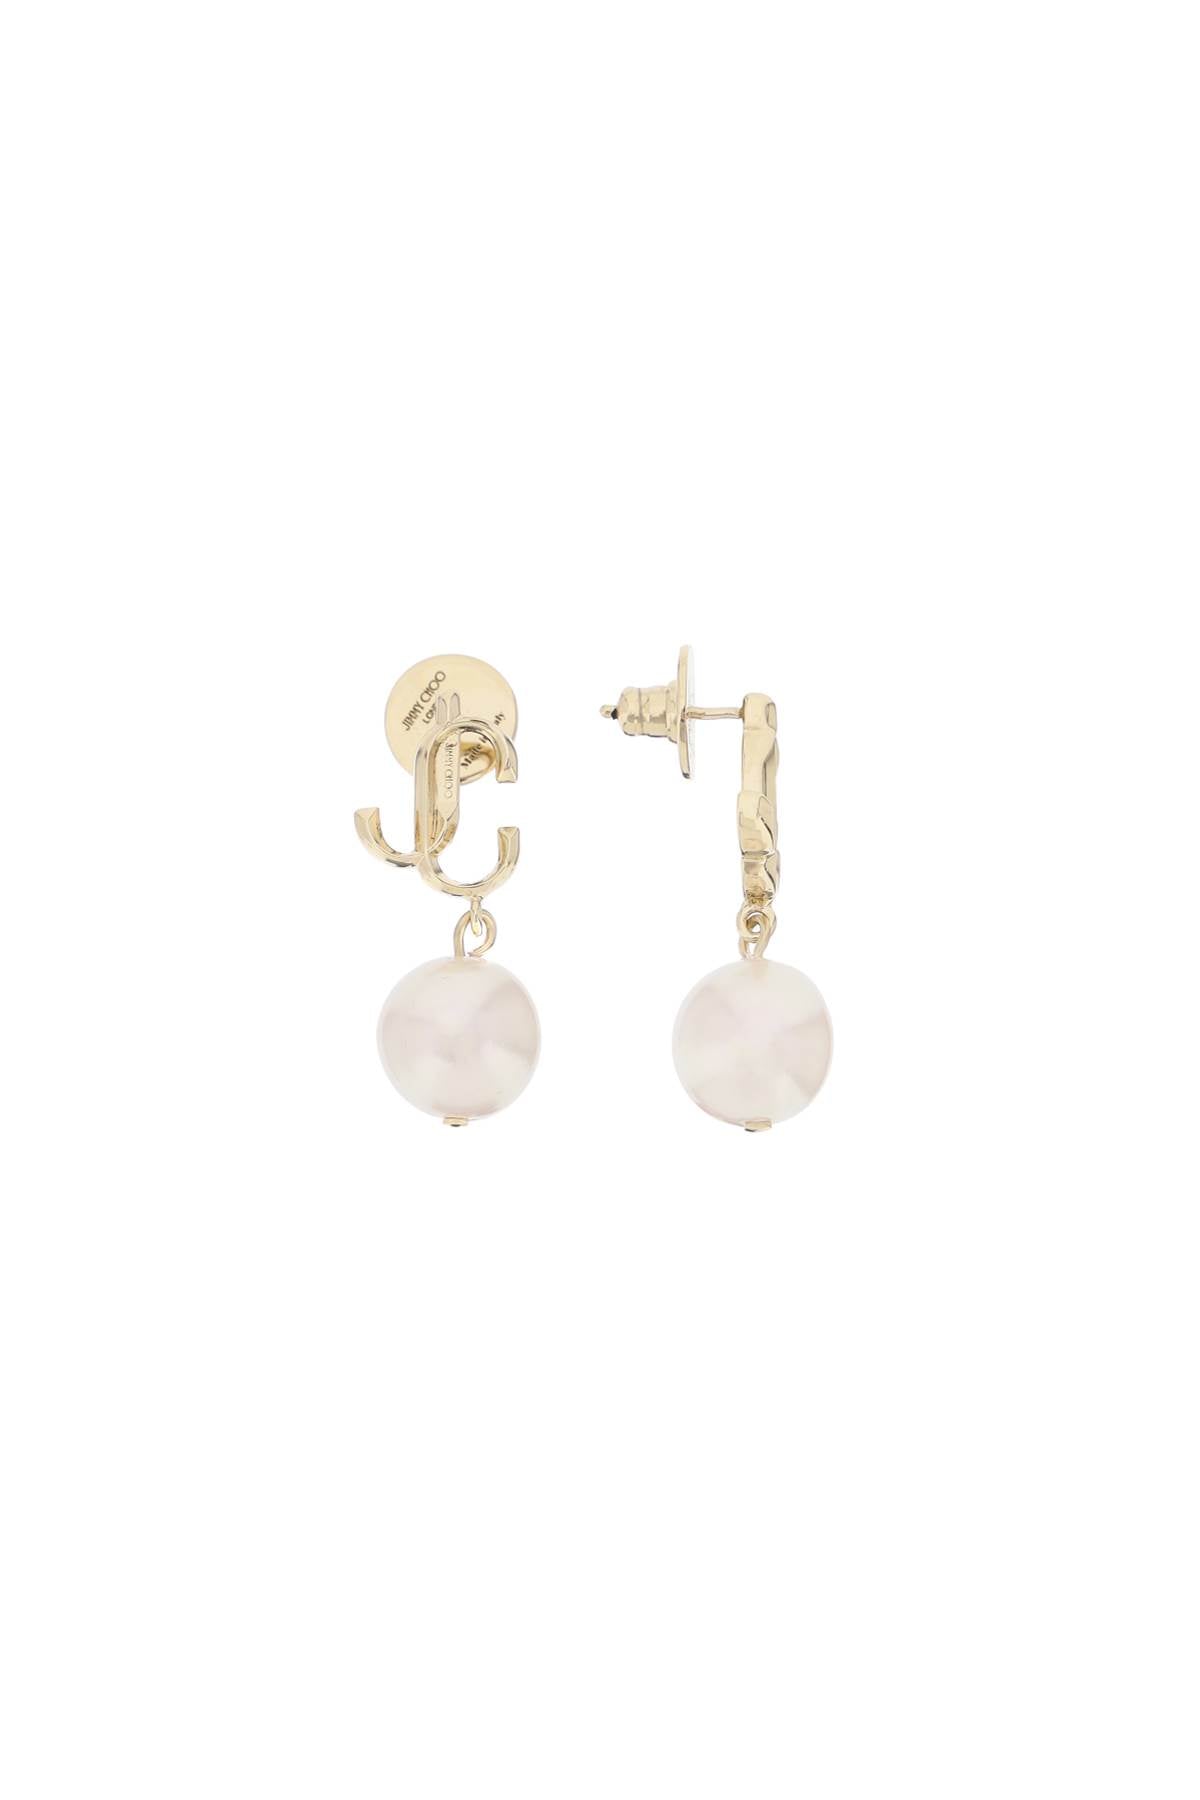 jc pearl earrings JC PEARL EARRING DXQ GOLD WHITE